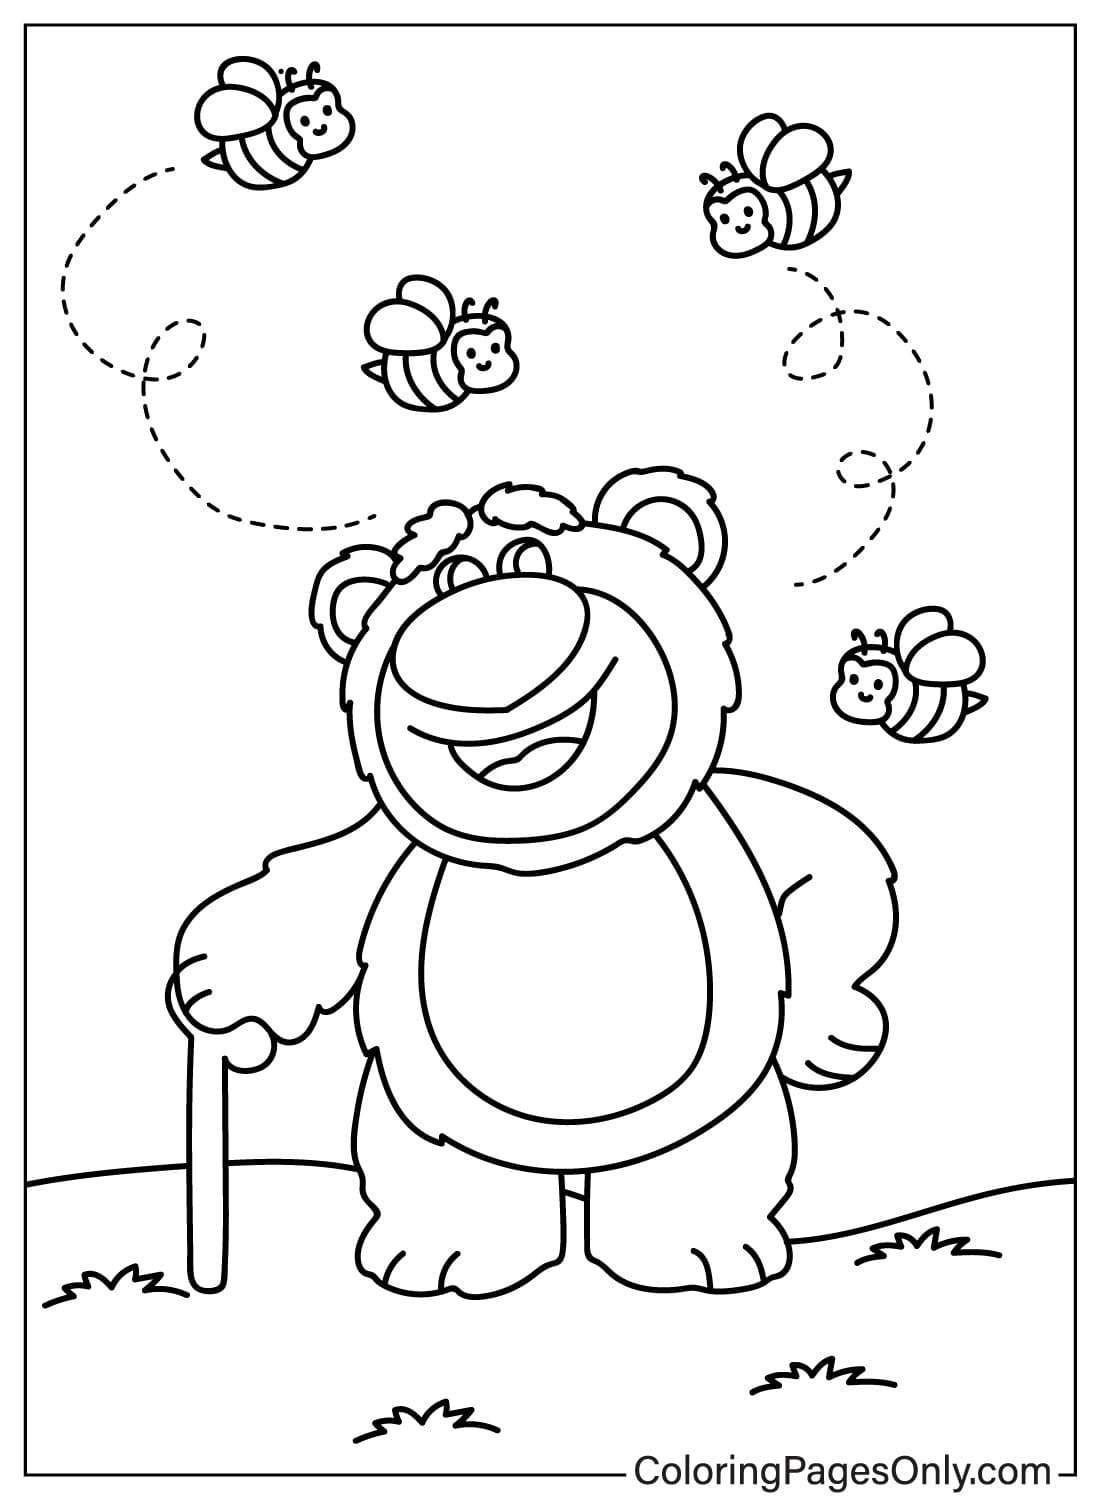 Página para colorear del oso Lotso gratis del oso Lotso